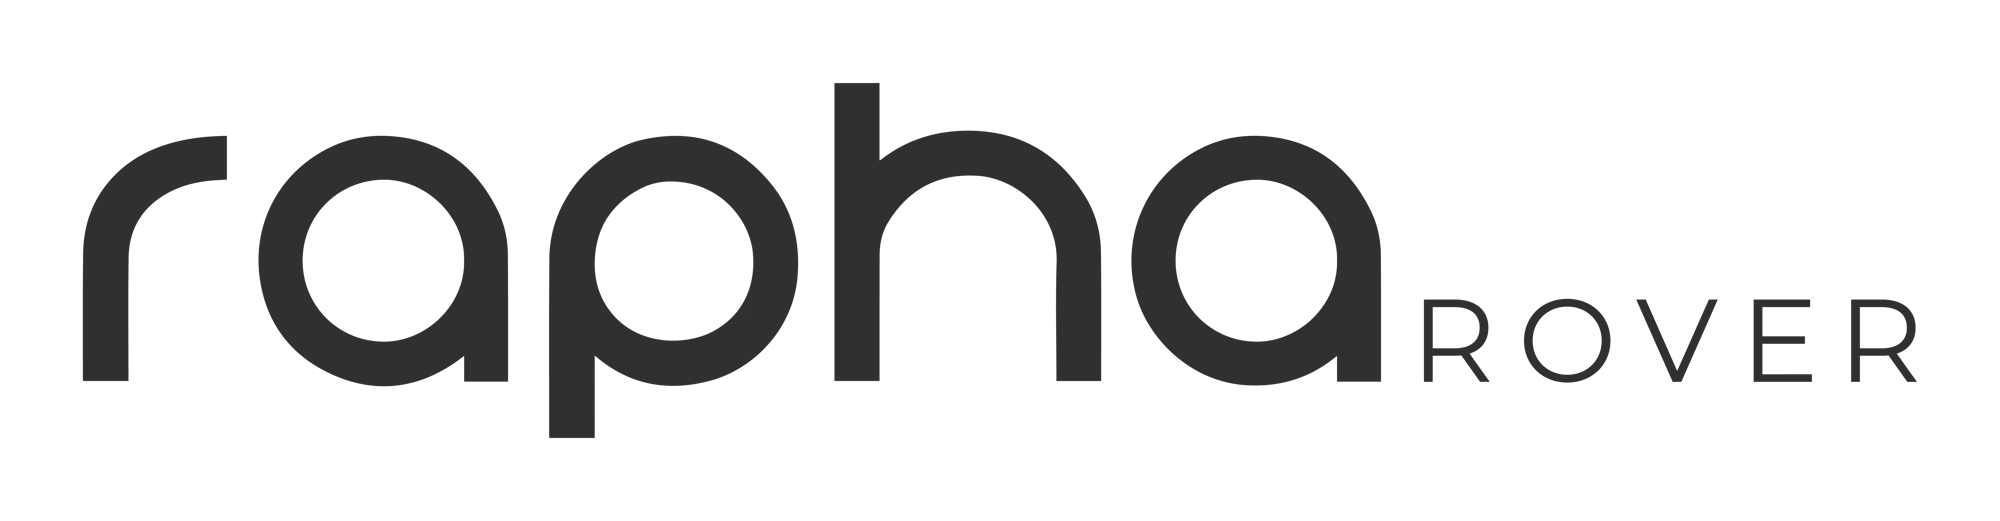 Rapha Rover logo